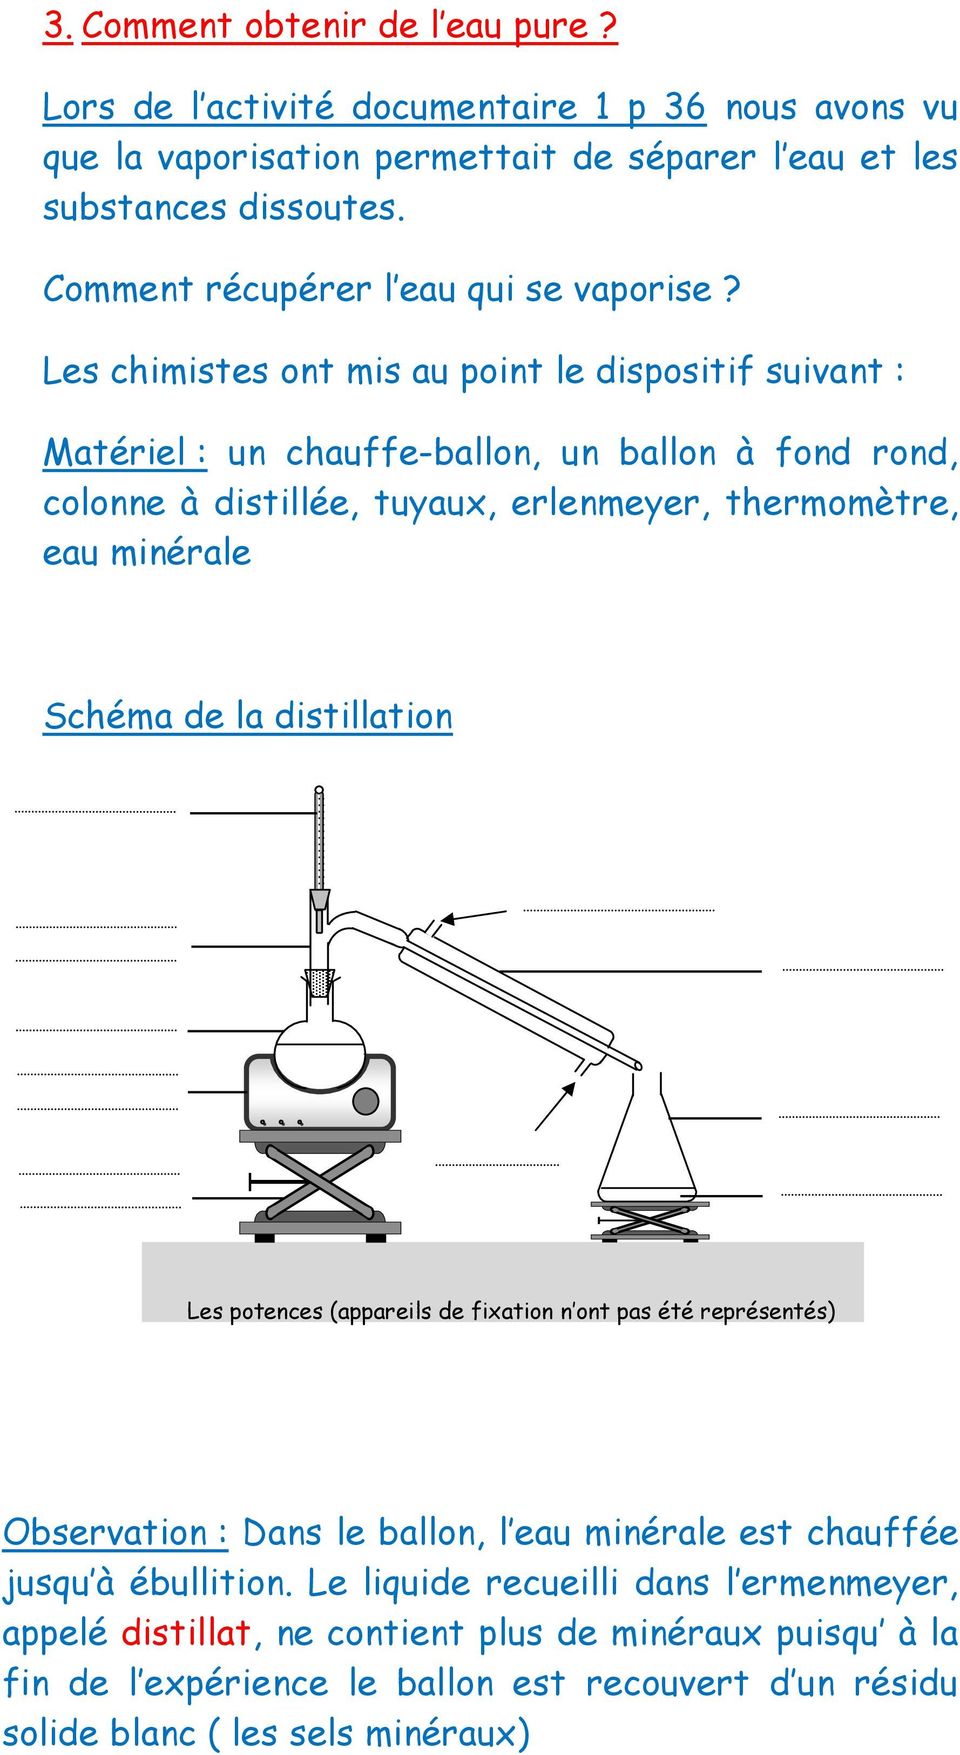 Les chimistes ont mis au point le dispositif suivant : Matériel : un chauffe-ballon, un ballon à fond rond, colonne à distillée, tuyaux, erlenmeyer, thermomètre, eau minérale Schéma